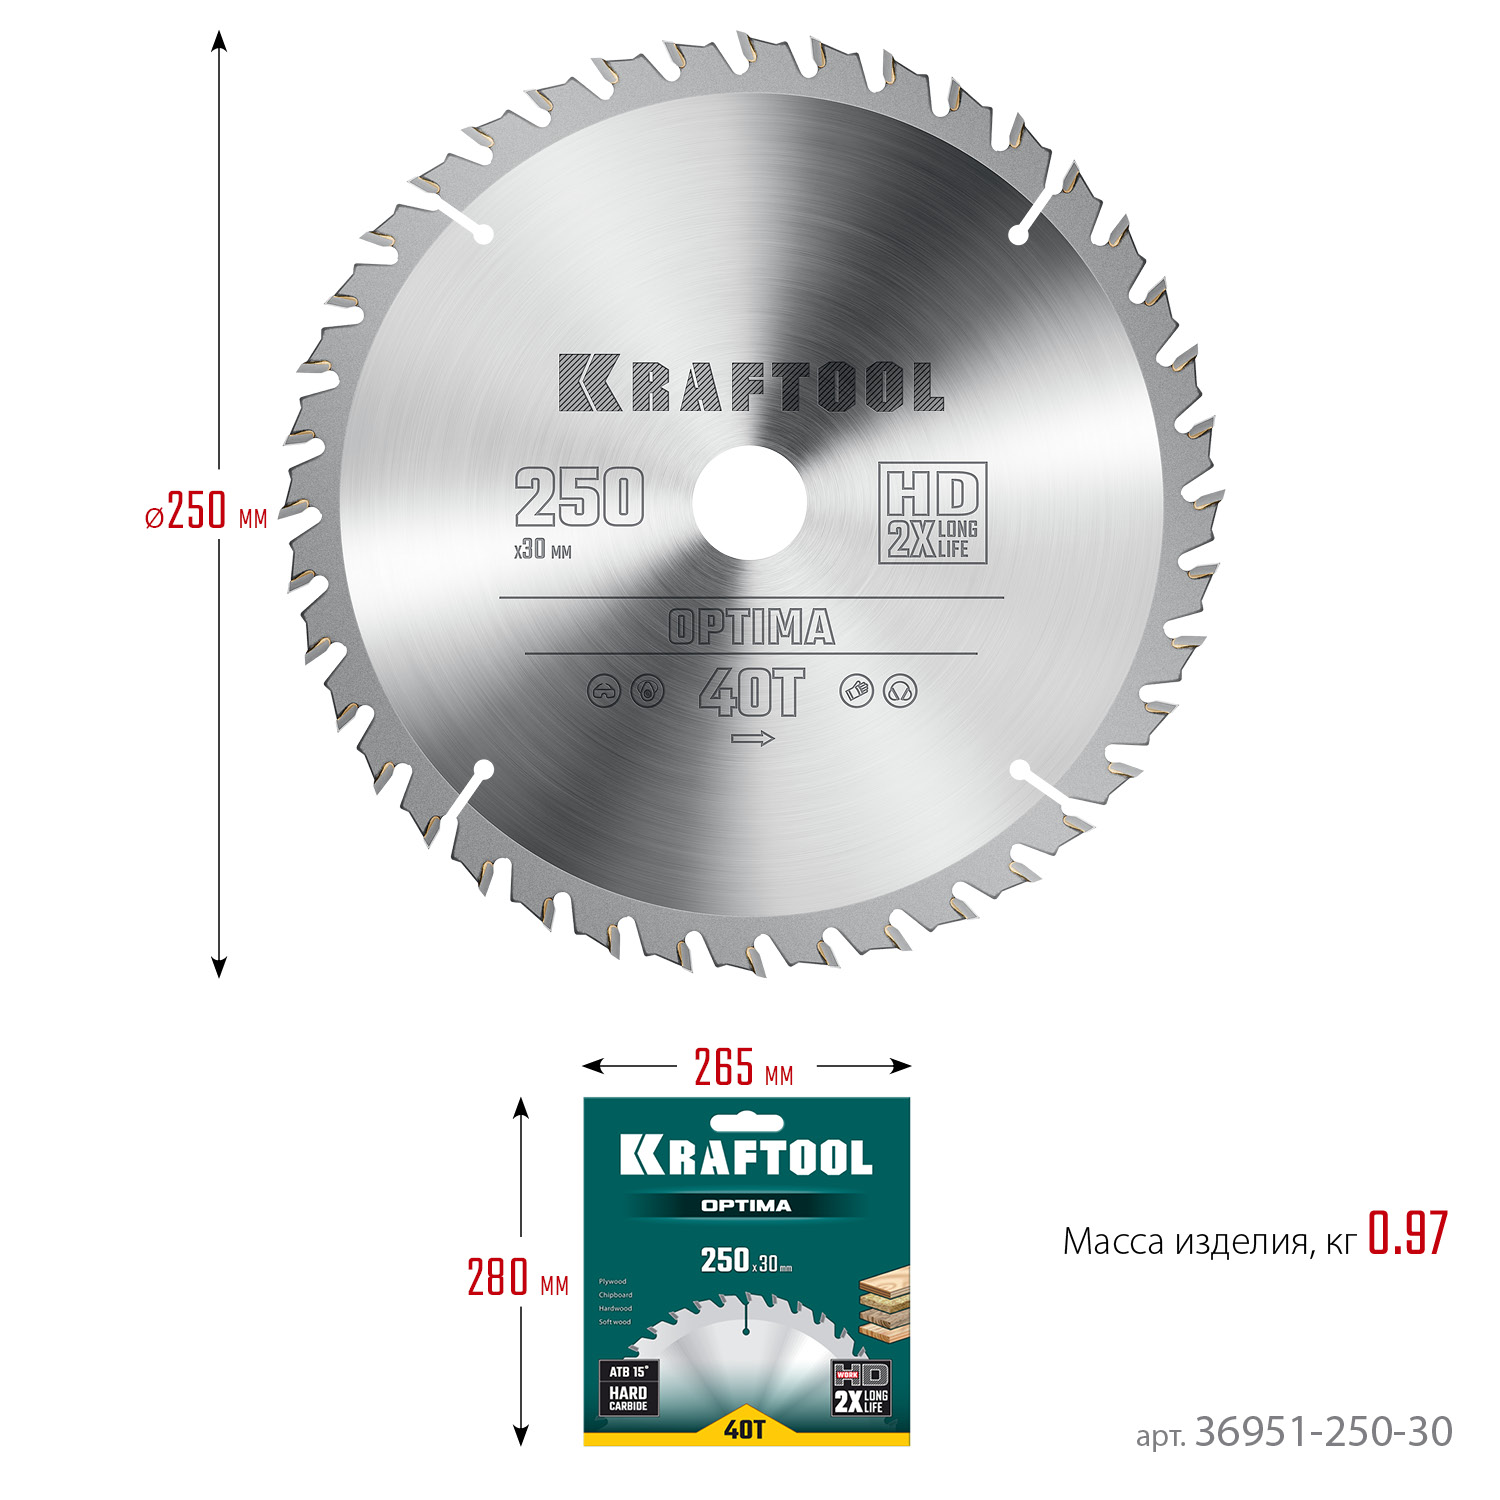 KRAFTOOL Optima, 250 х 30 мм, 40Т, пильный диск по дереву (36951-250-30)